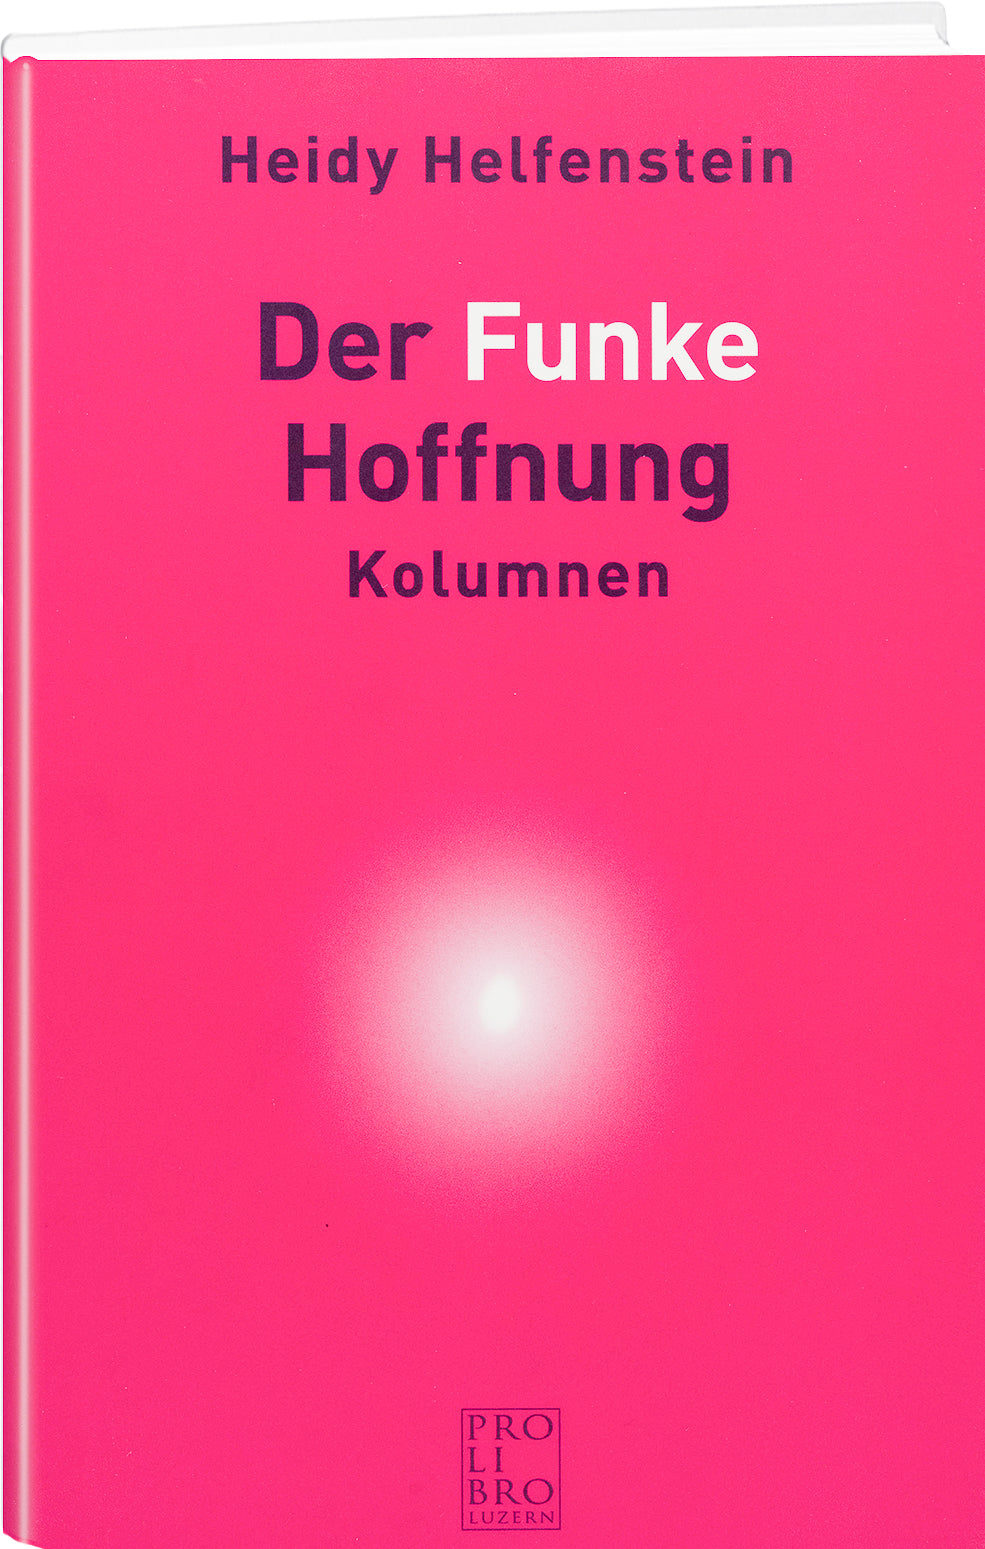 Heidy Helfenstein: Der Funke Hoffnung - prolibro.ch